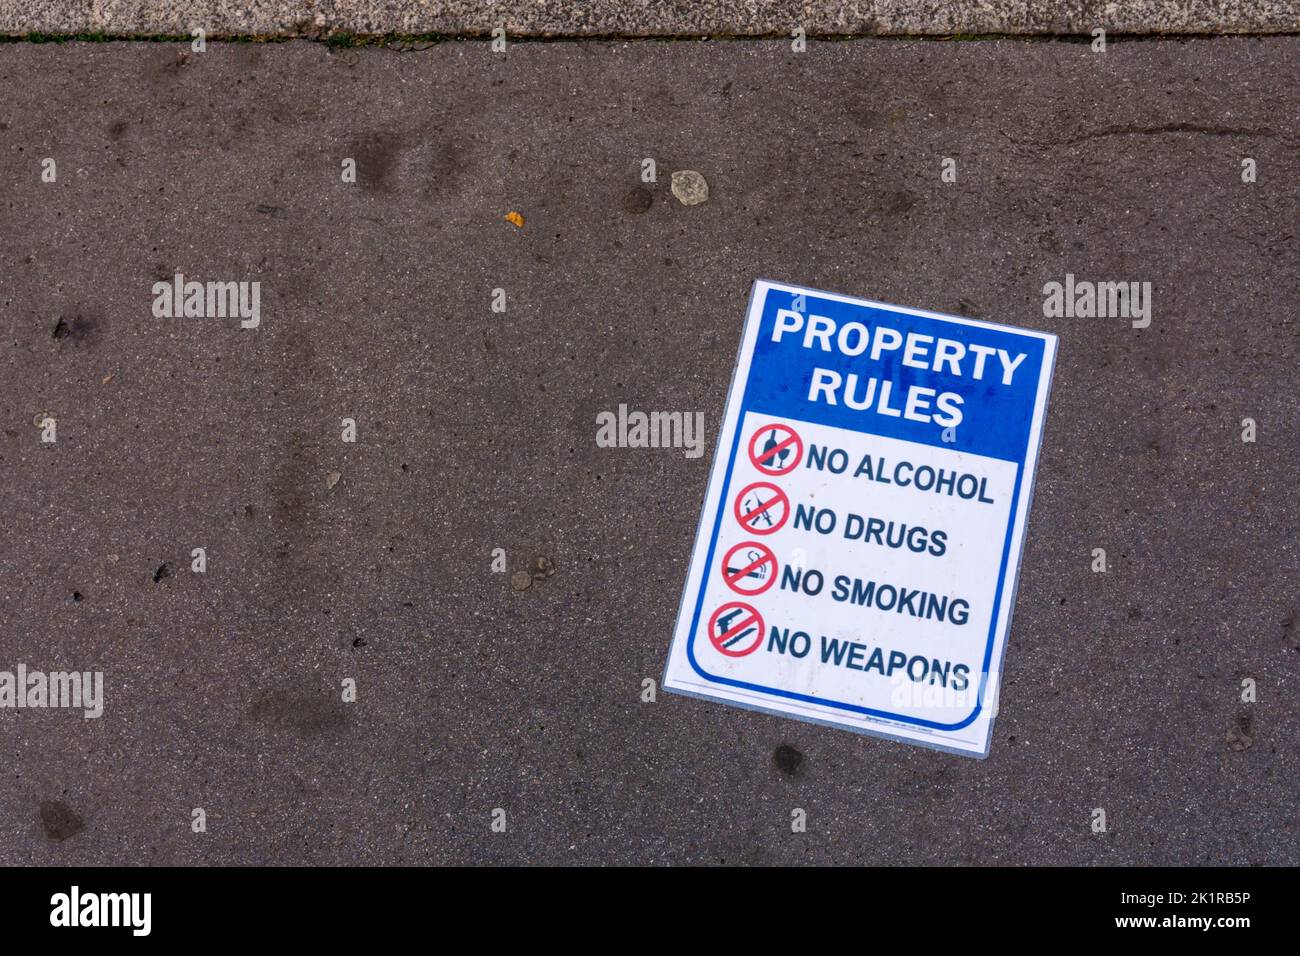 Auf einem Schild in einer Londoner Straße werden die Eigenbestimmungen als „No Alcohol“, „No Drugs“, „No Smoking“ und „No Weapons“ aufgeführt. Stockfoto